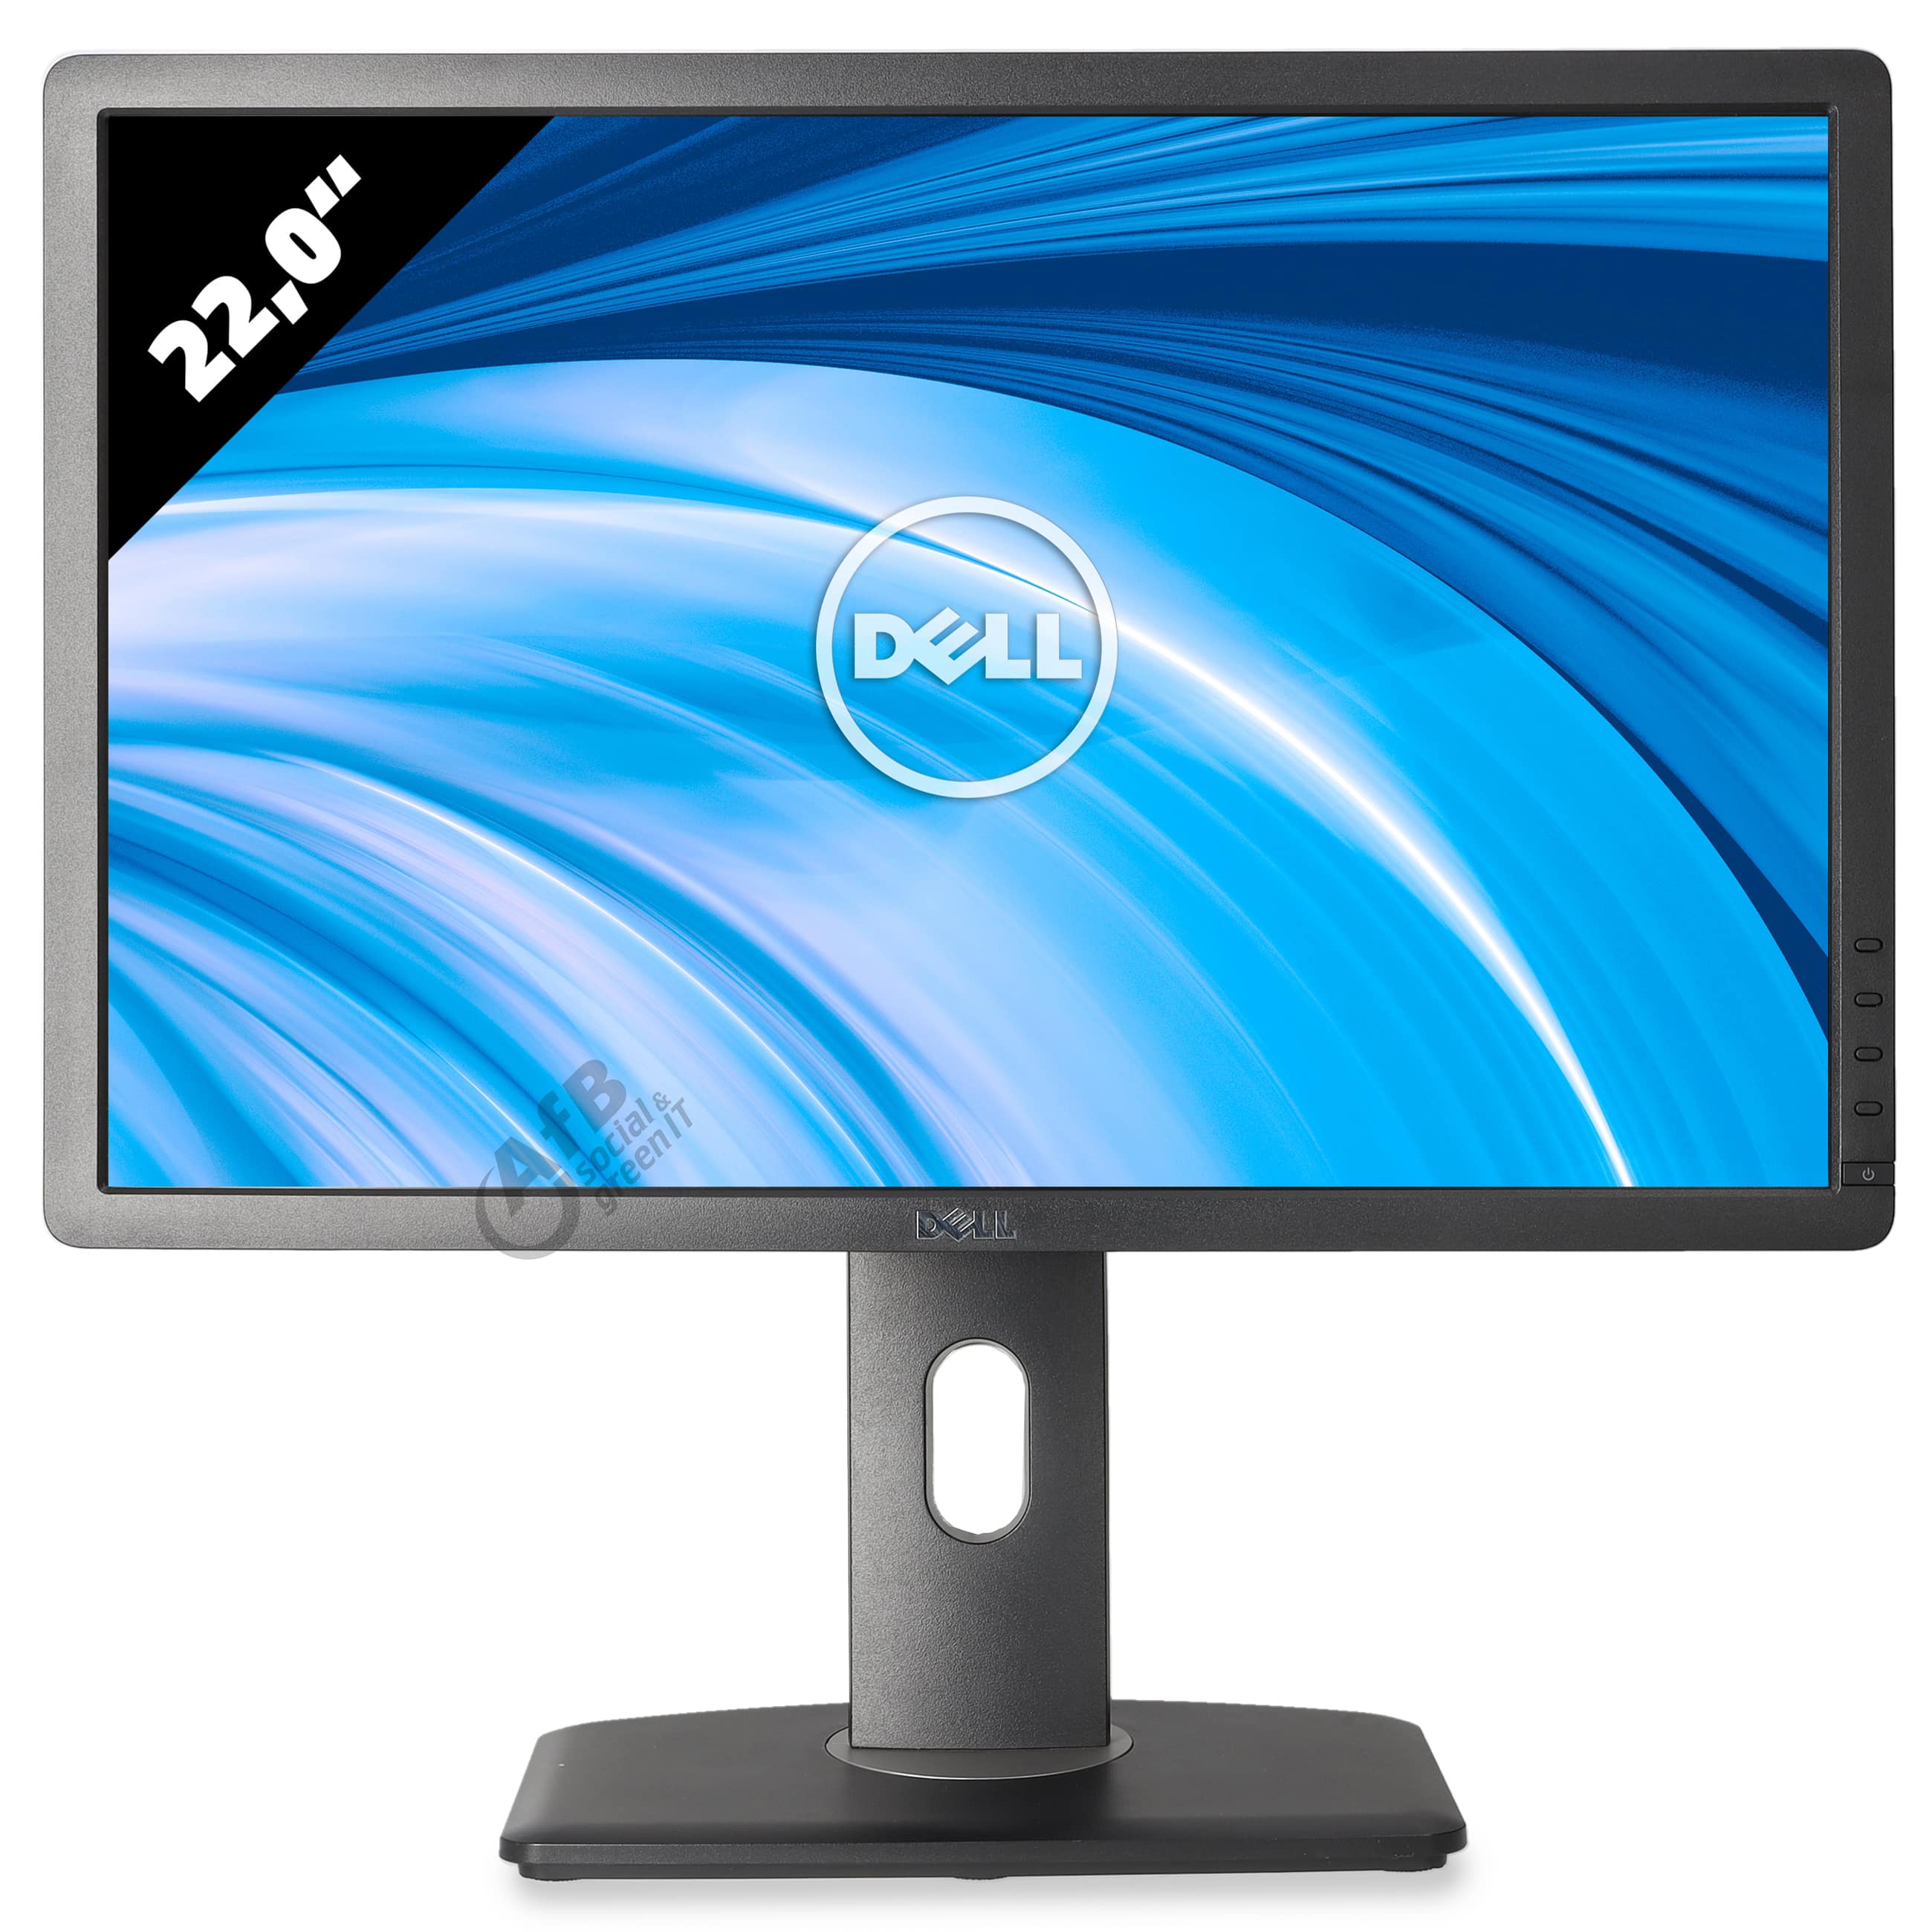 Dell Professional P2213 - 1680 x 1050 - WSXGA+